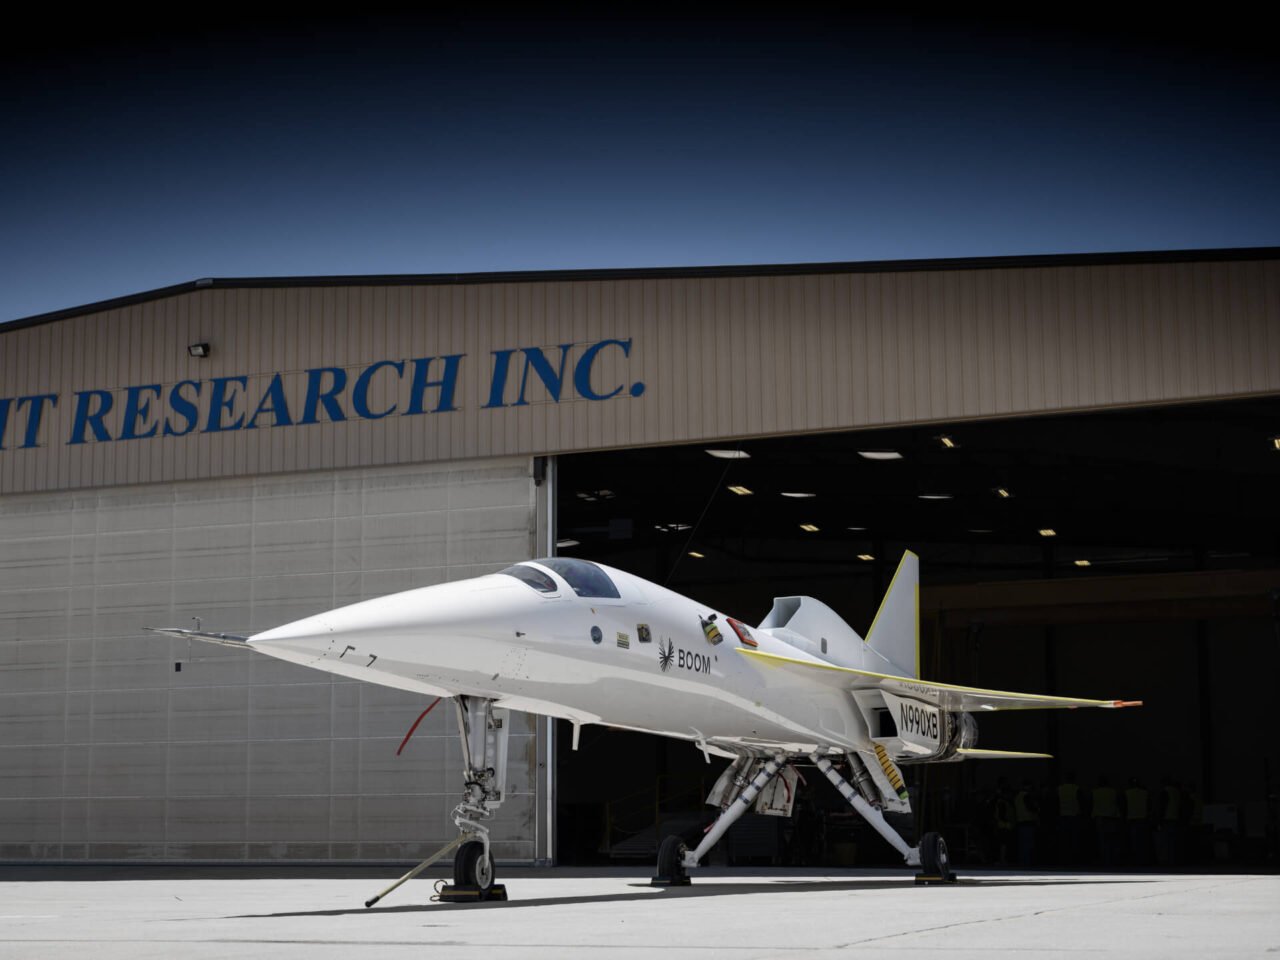 Naddźwiękowy odrzutowiec. Biały odrzutowiec badawczy przed hangarem z napisem "Flight Research Inc."